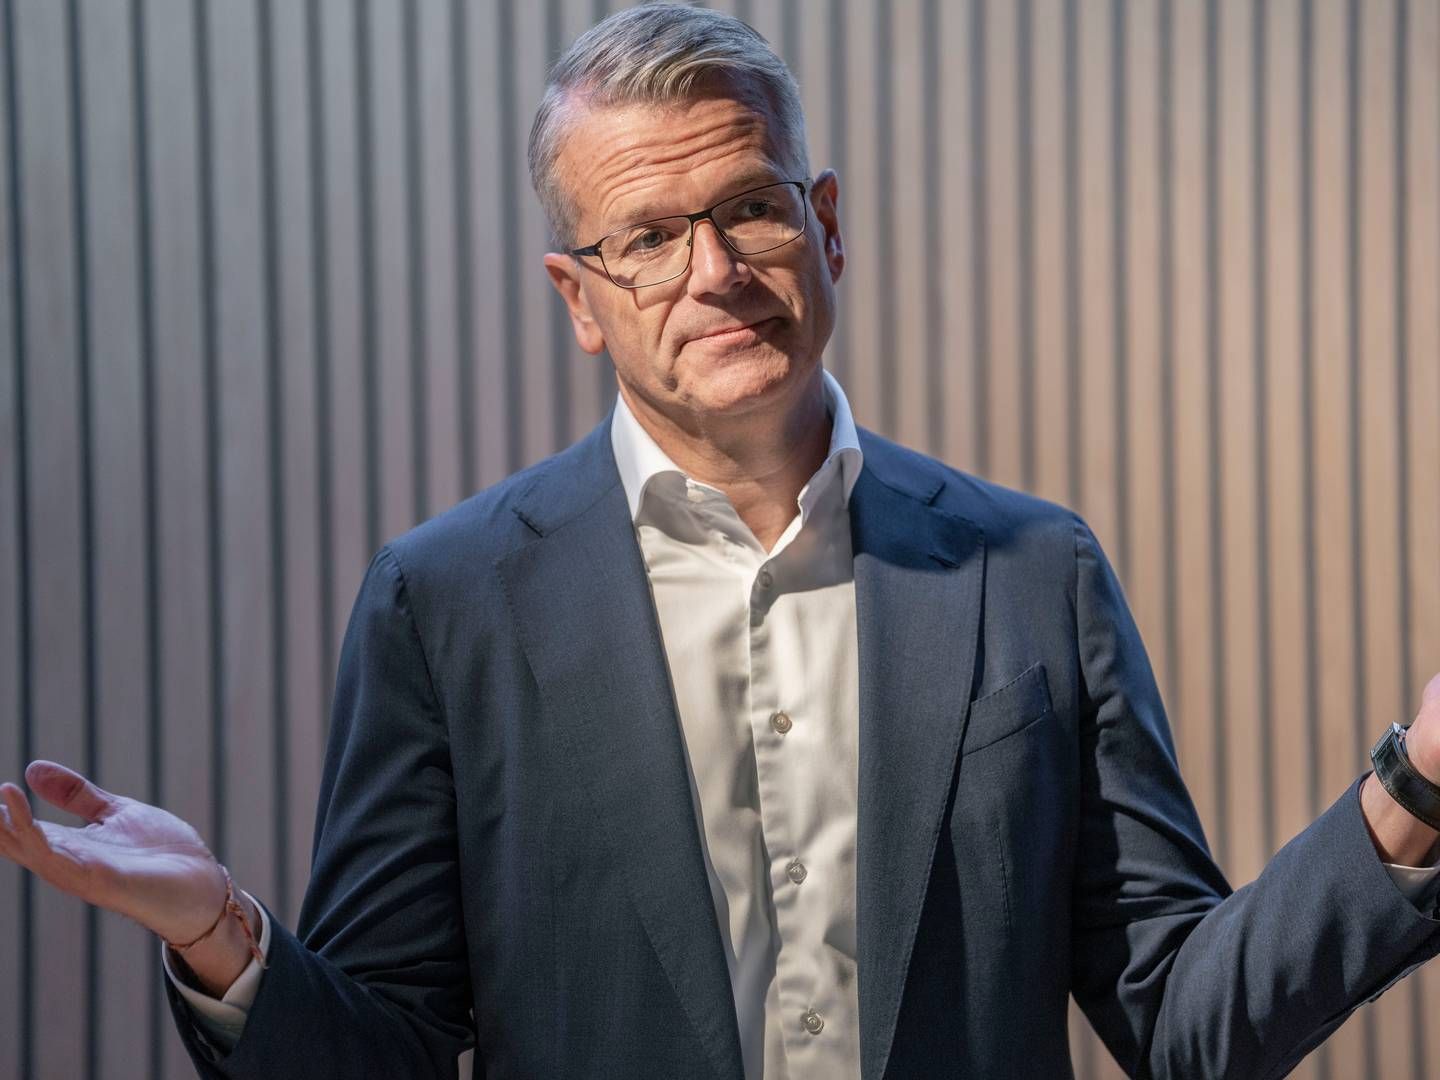 Vincent Clercs gage er vokset markant, efter han blev forfremmet til topchef i A.P. Møller-Mærsk. | Foto: Thomas Traasdahl/Ritzau Scanpix